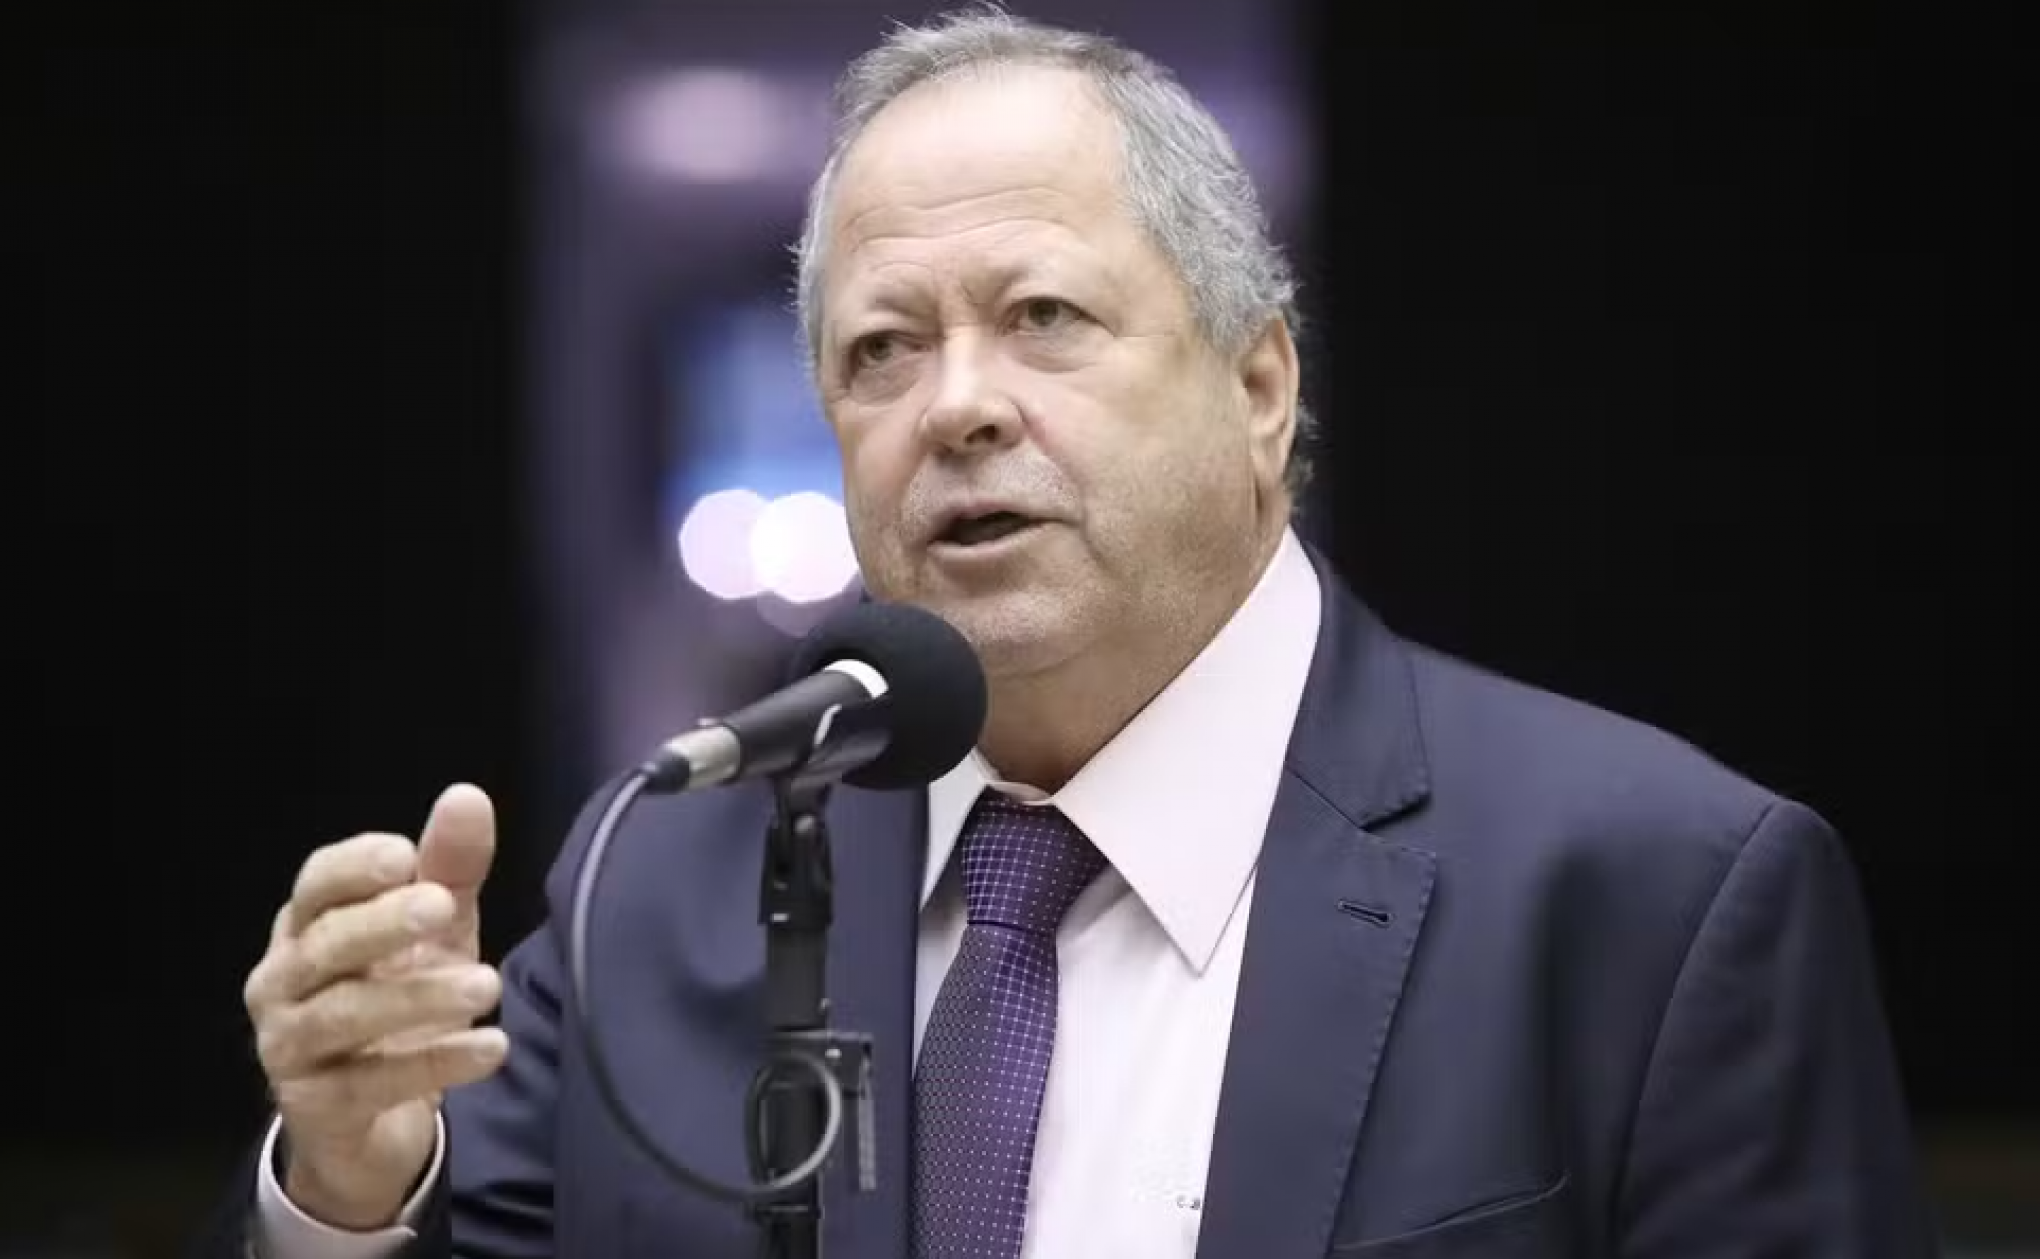 CASO MARIELLE: União Brasil vai abrir processo para expulsar Chiquinho Brazão